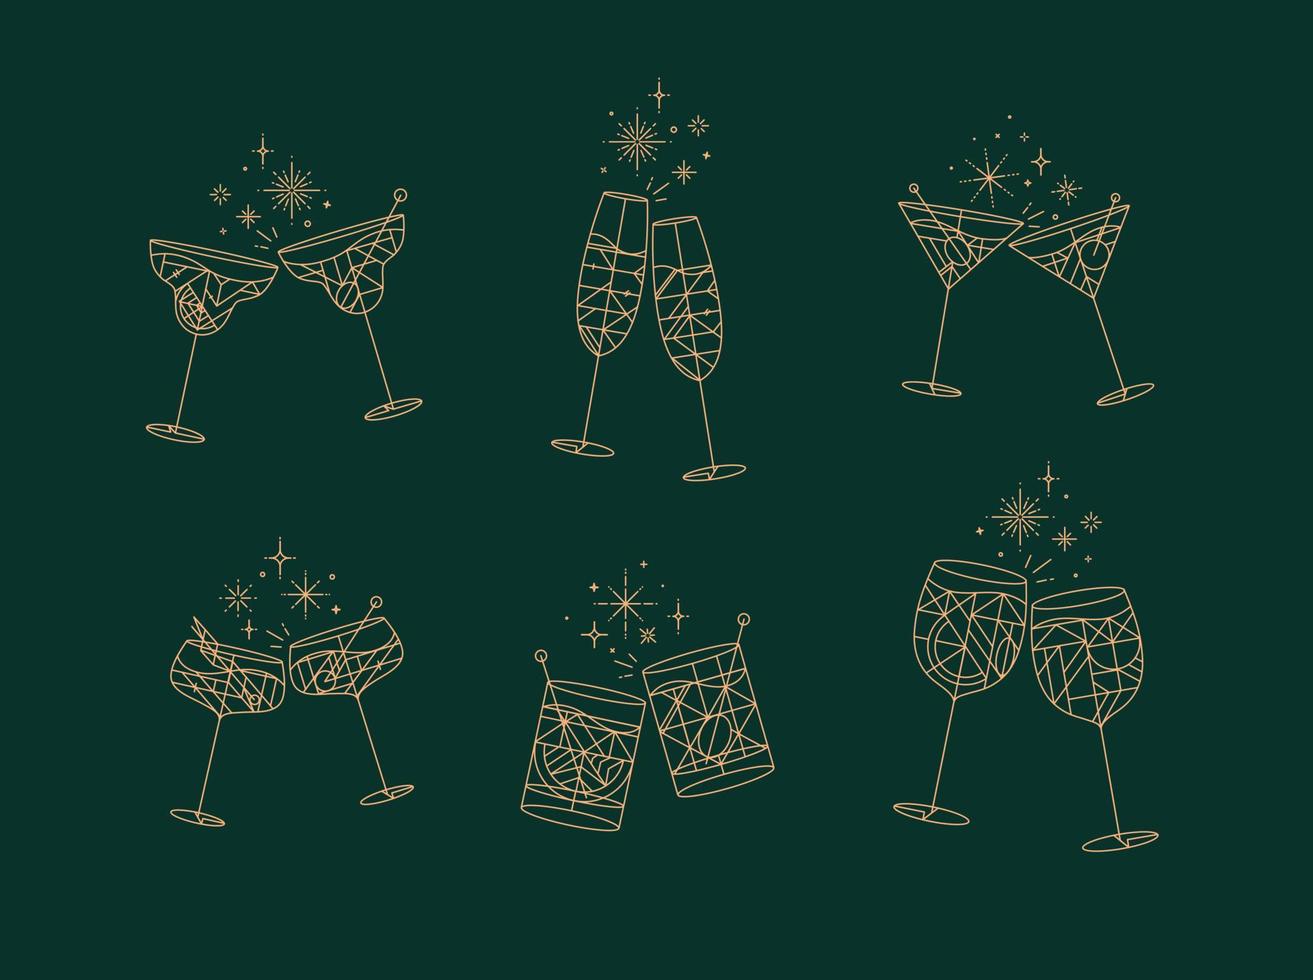 copas de cóctel animan a prosecco, vino, whisky, vermú, ginebra, martini, aperol, margarita en un estilo moderno de línea plana dibujando sobre fondo verde vector